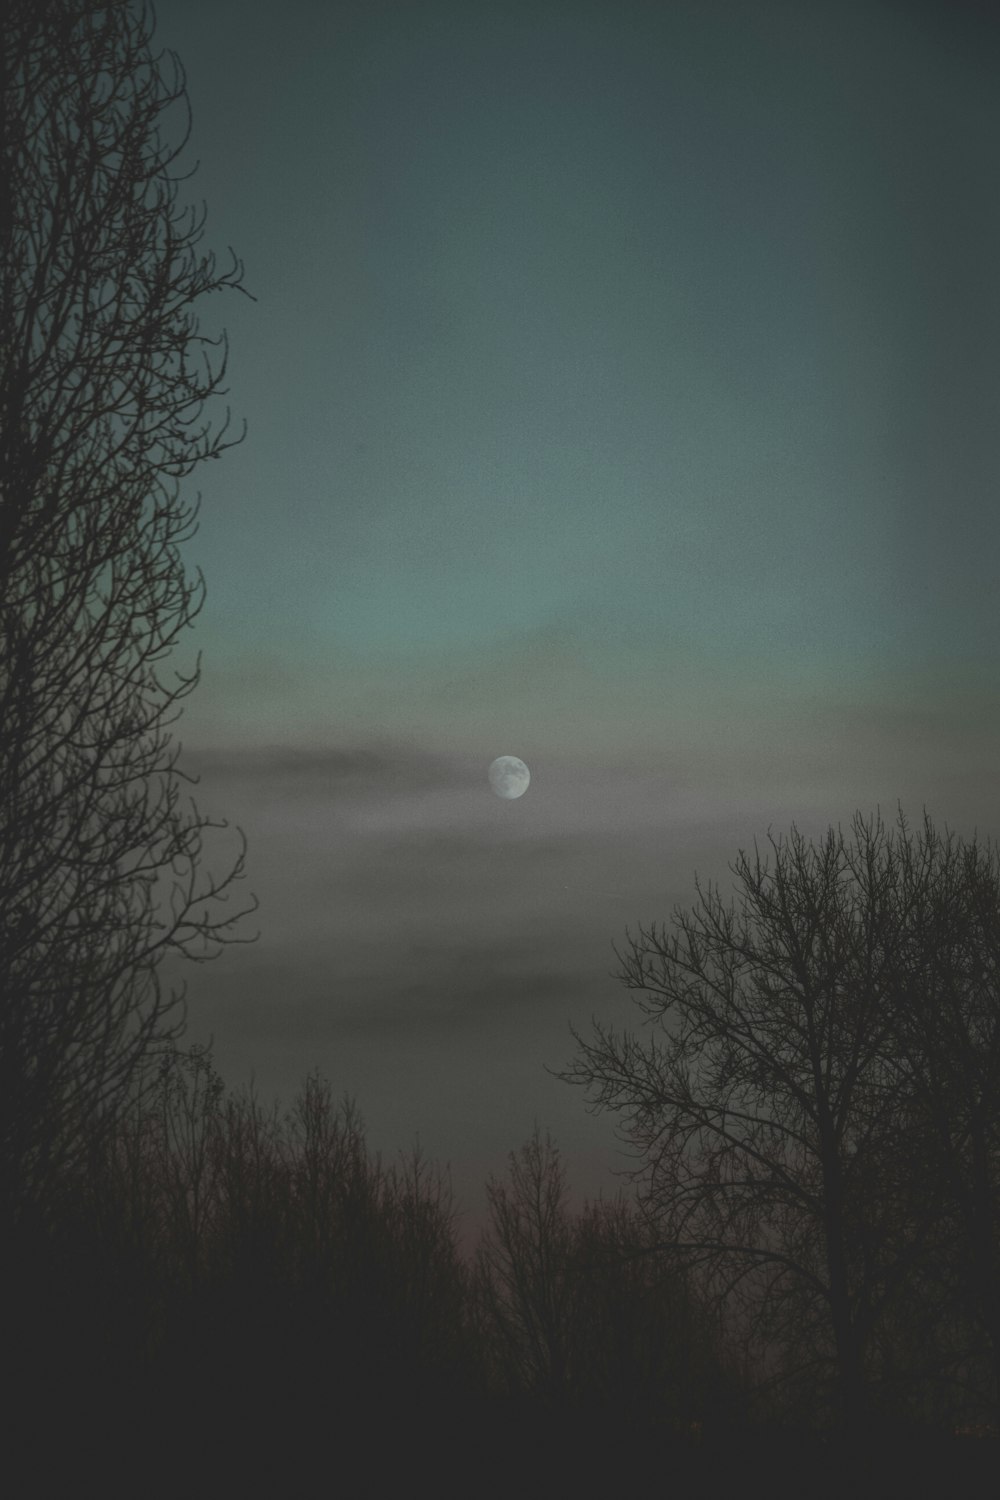 Une pleine lune est vue à travers les arbres